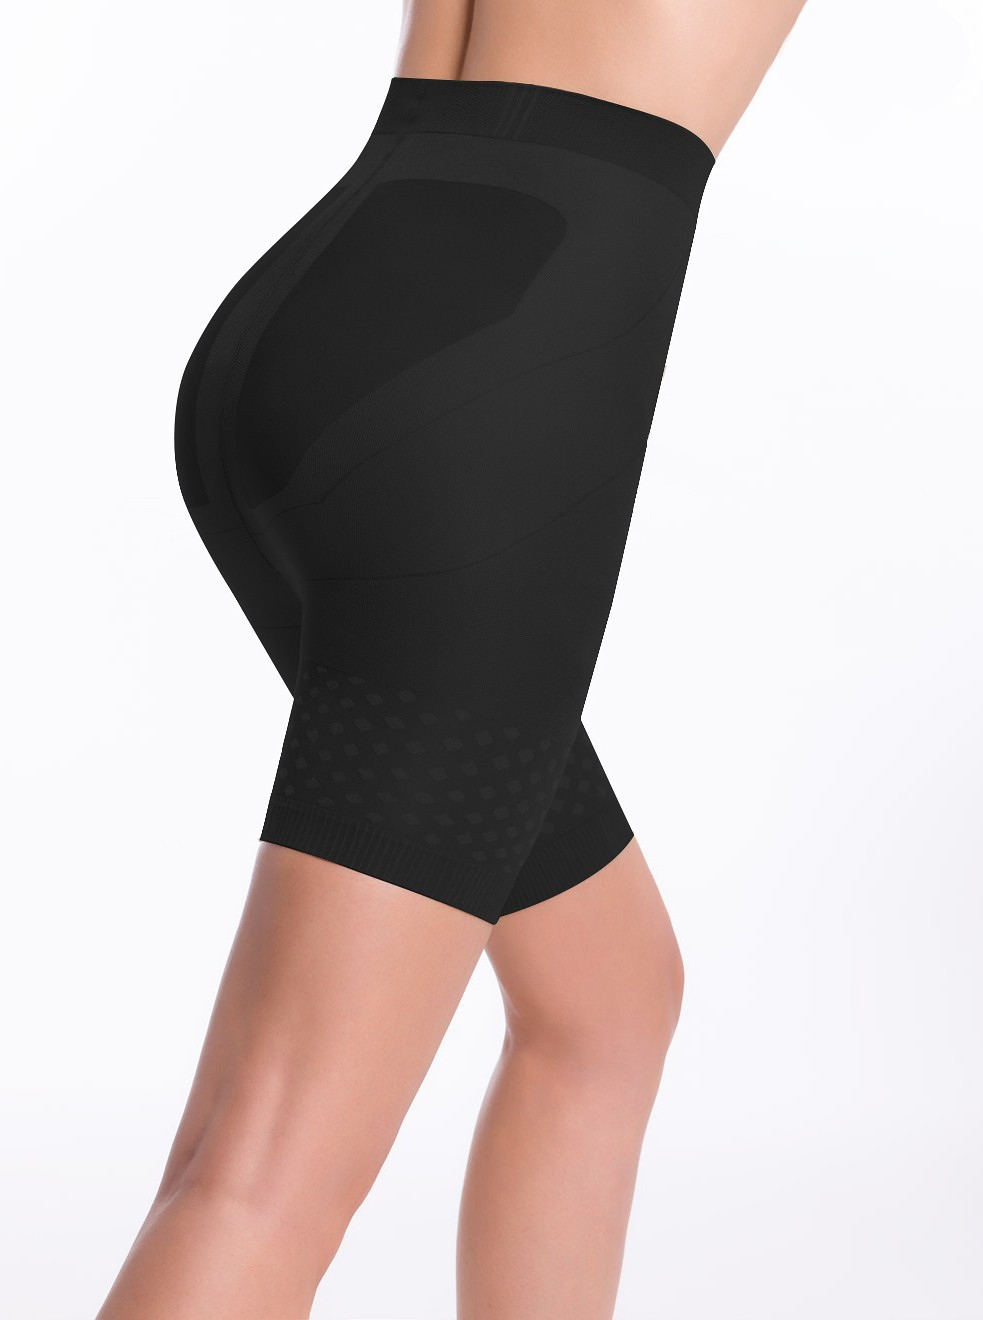 Dámské kalhotky Panty Slim Up černá 2S model 9134822 - Envie